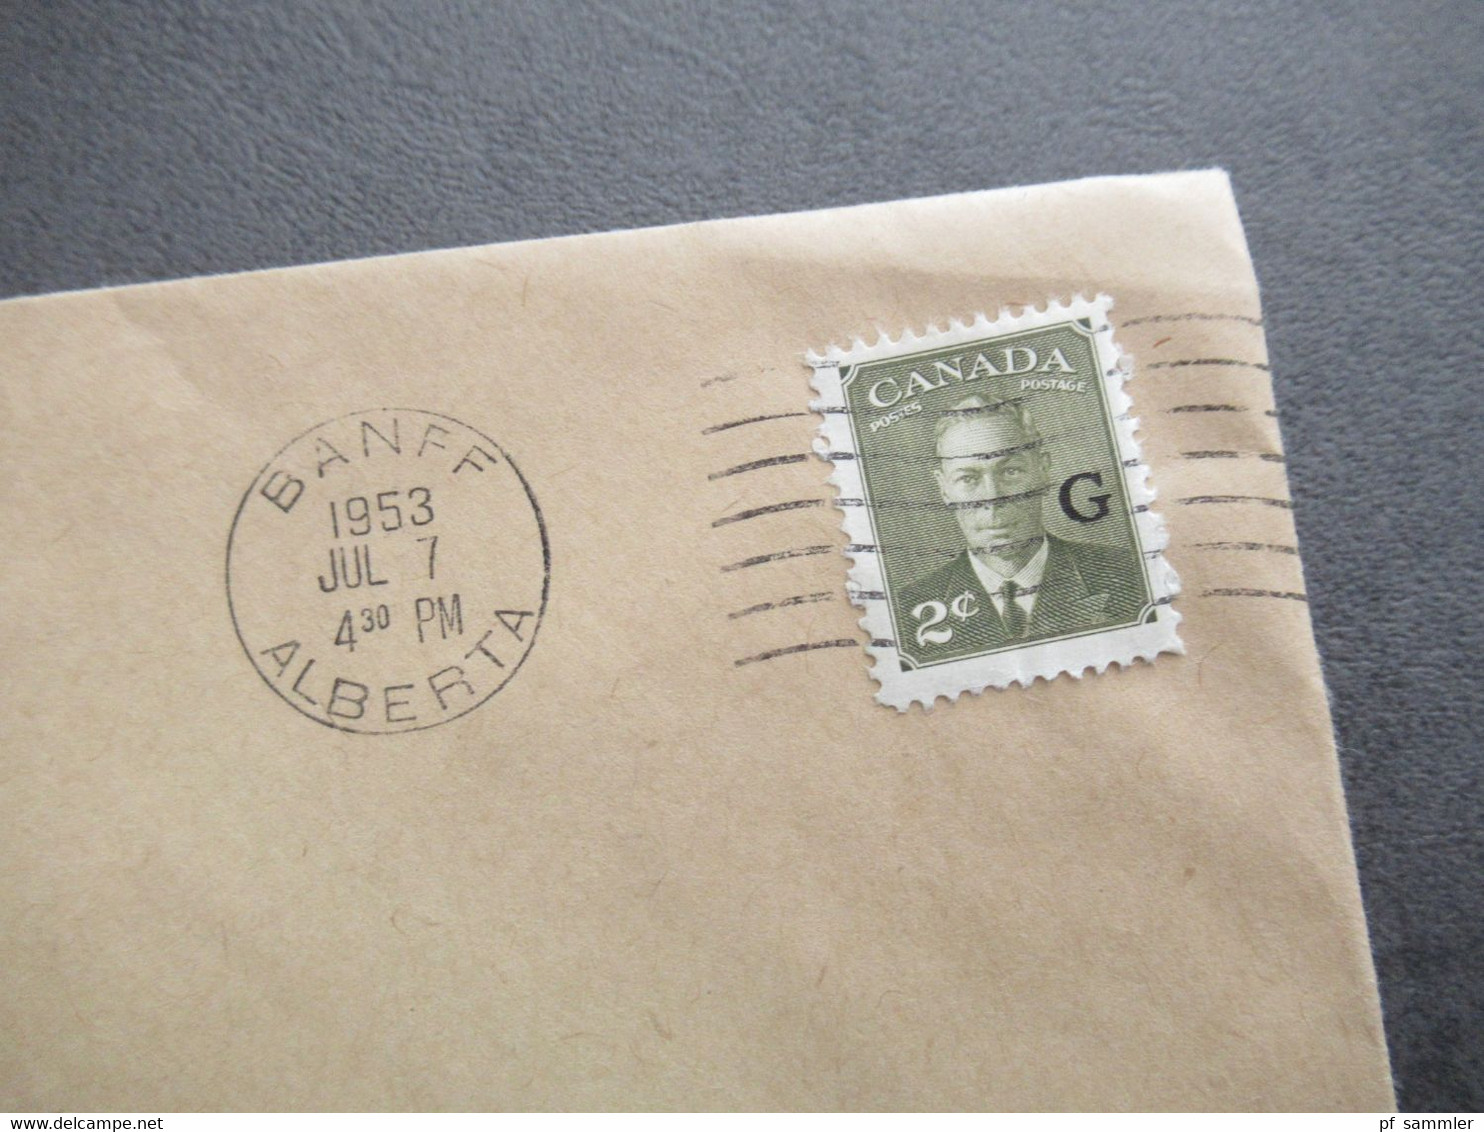 Kanada / Canada Dienstmarken 1949 / 1950er Jahre OHMS 5 Belege Mit Marken Mit Aufdruck G Für Government - Overprinted